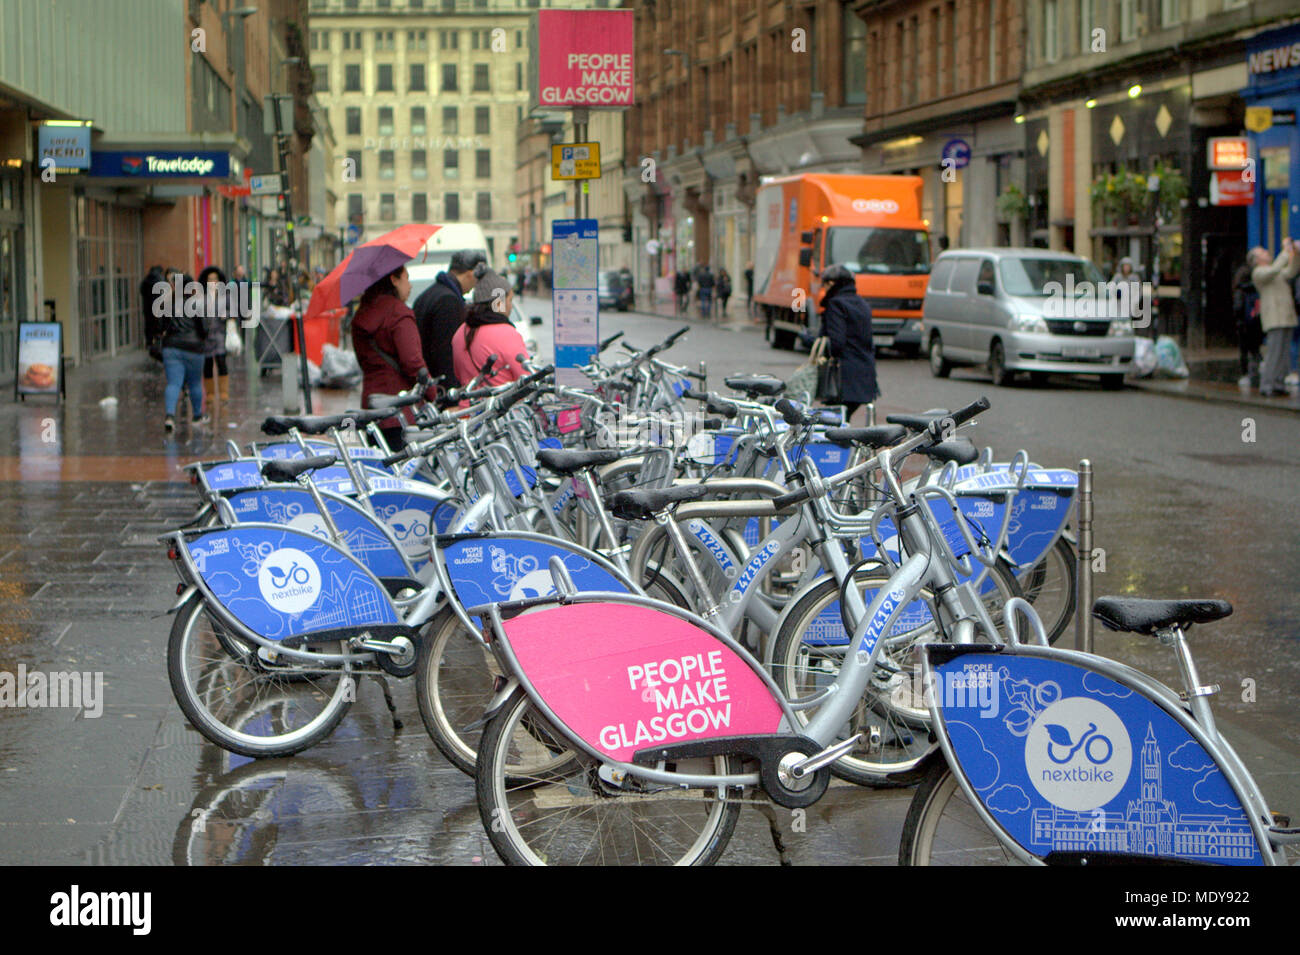 Le persone fanno Glasgow nextbike Ciclo schema di noleggio biciclette della Comunità progetto Queen Street, Glasgow, Regno Unito Foto Stock